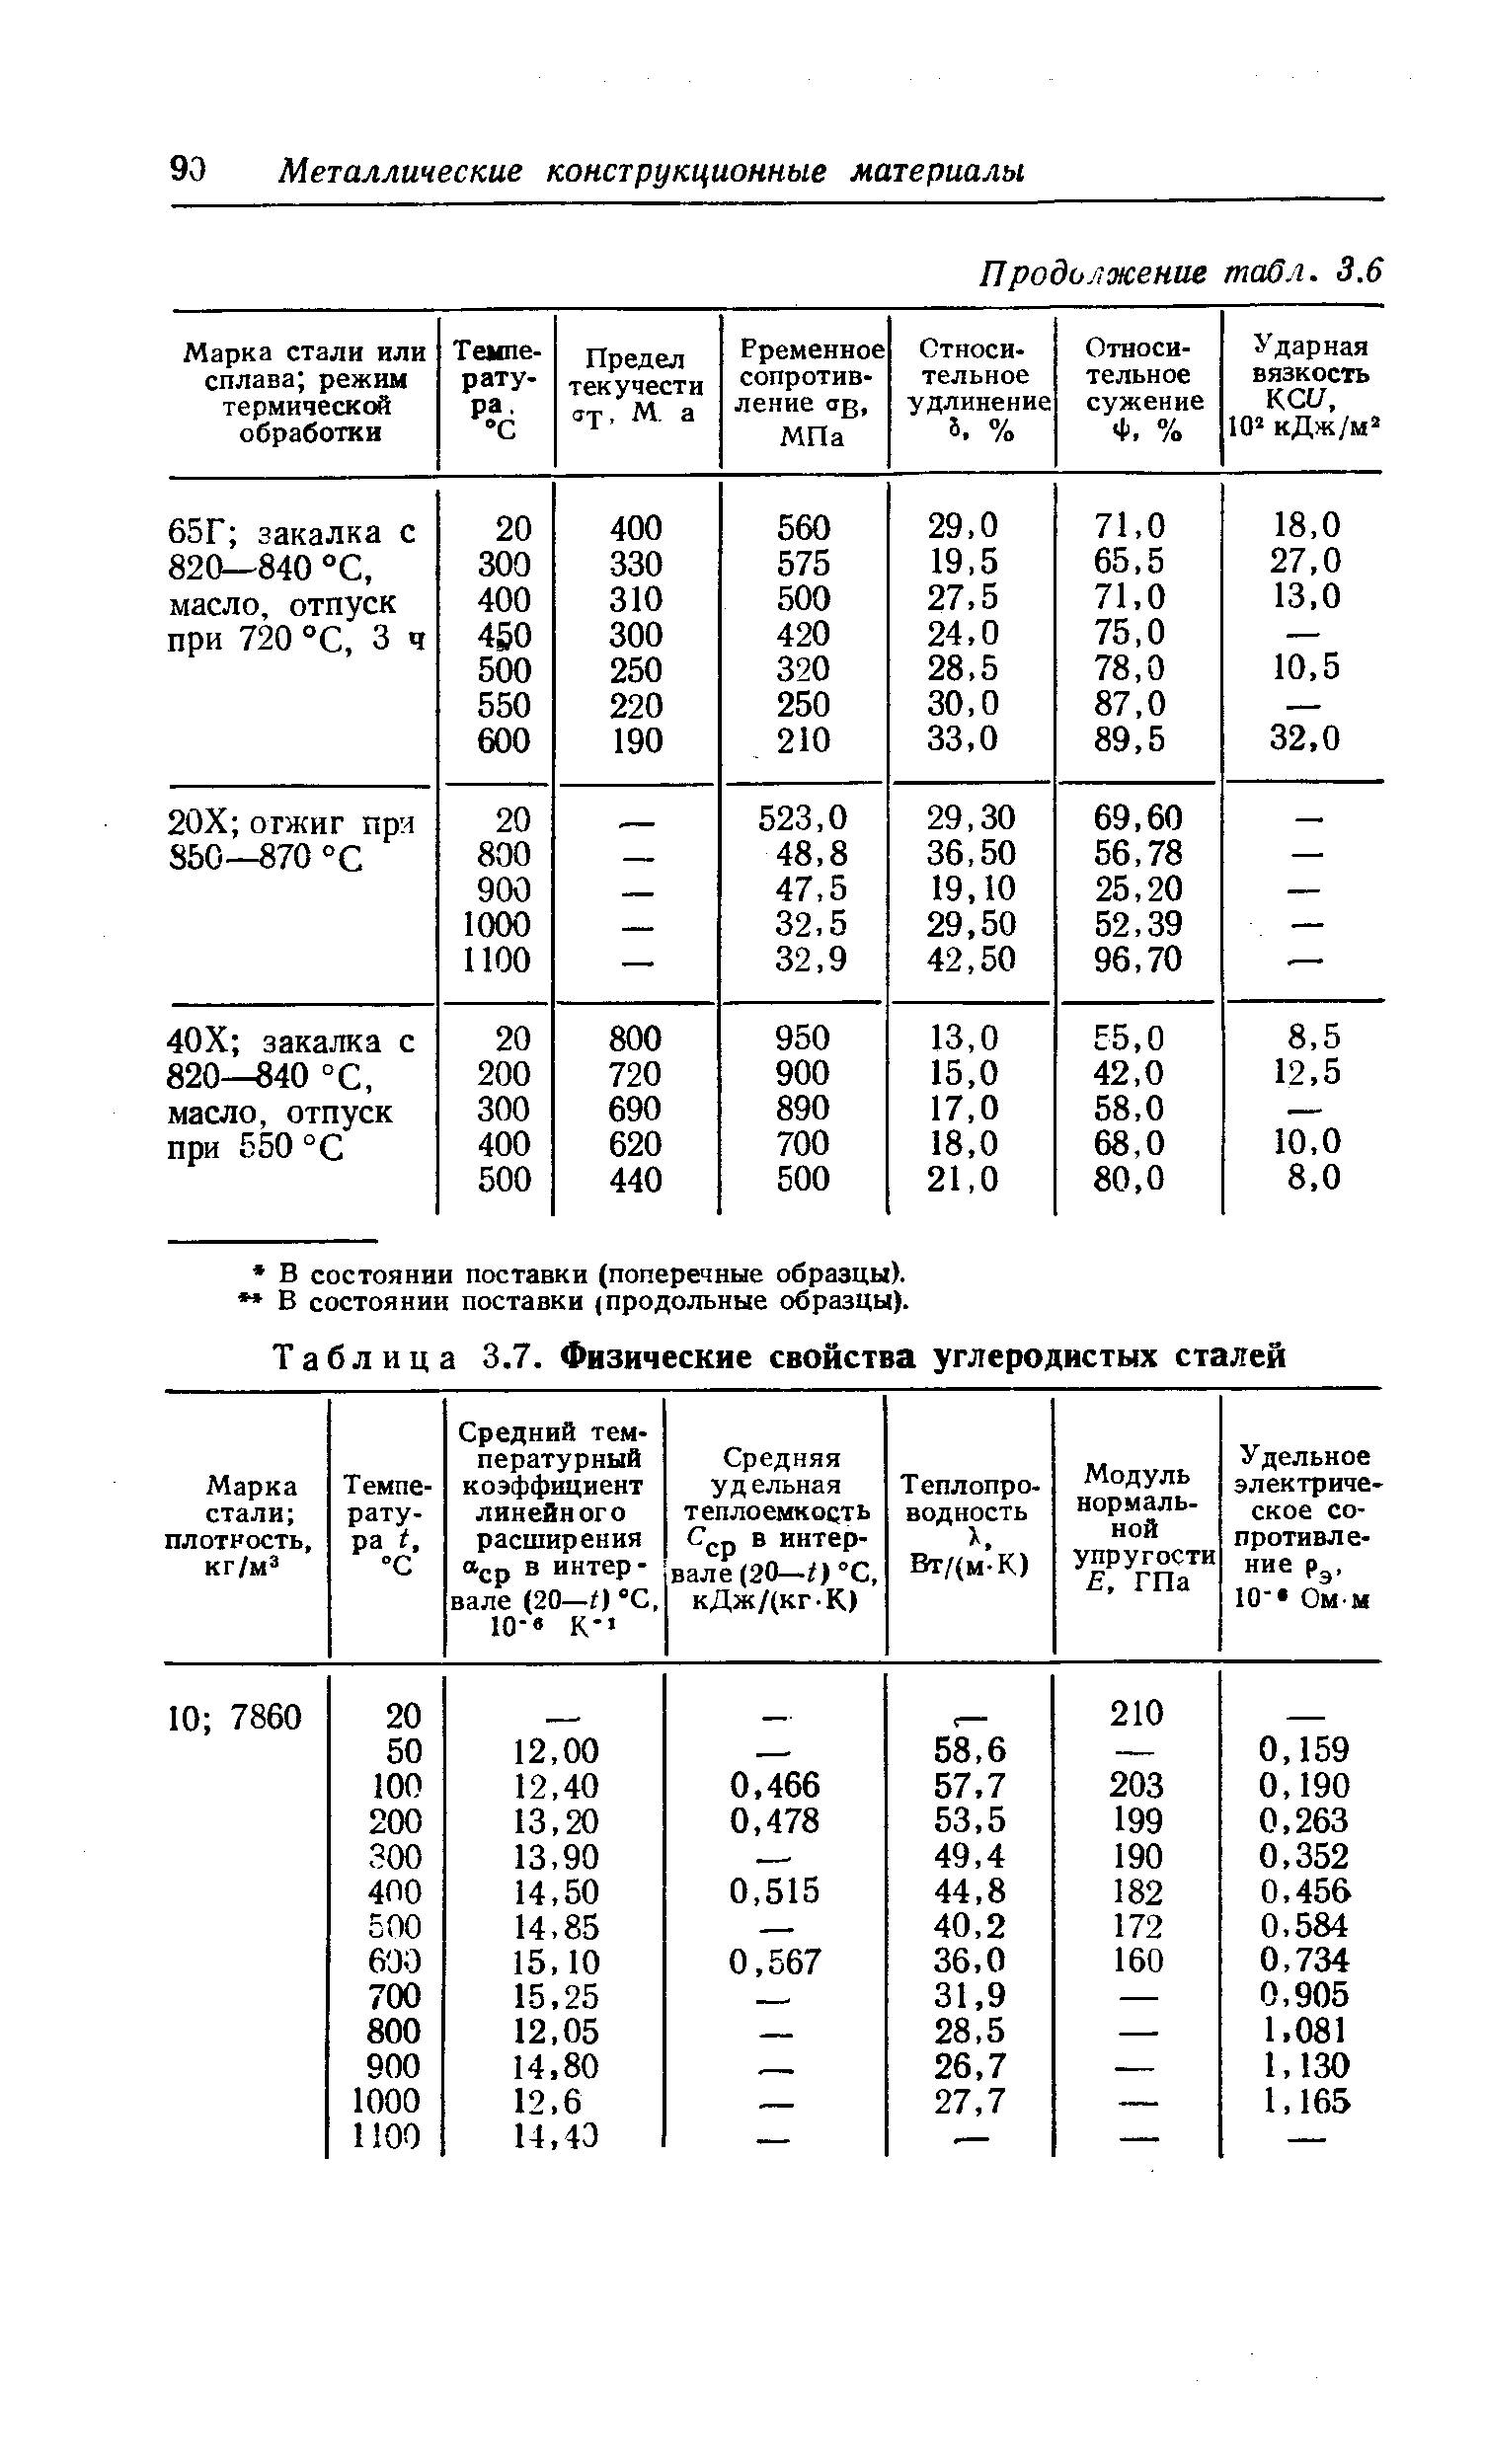 Таблица 3.7. Физические свойства углеродистых сталей
